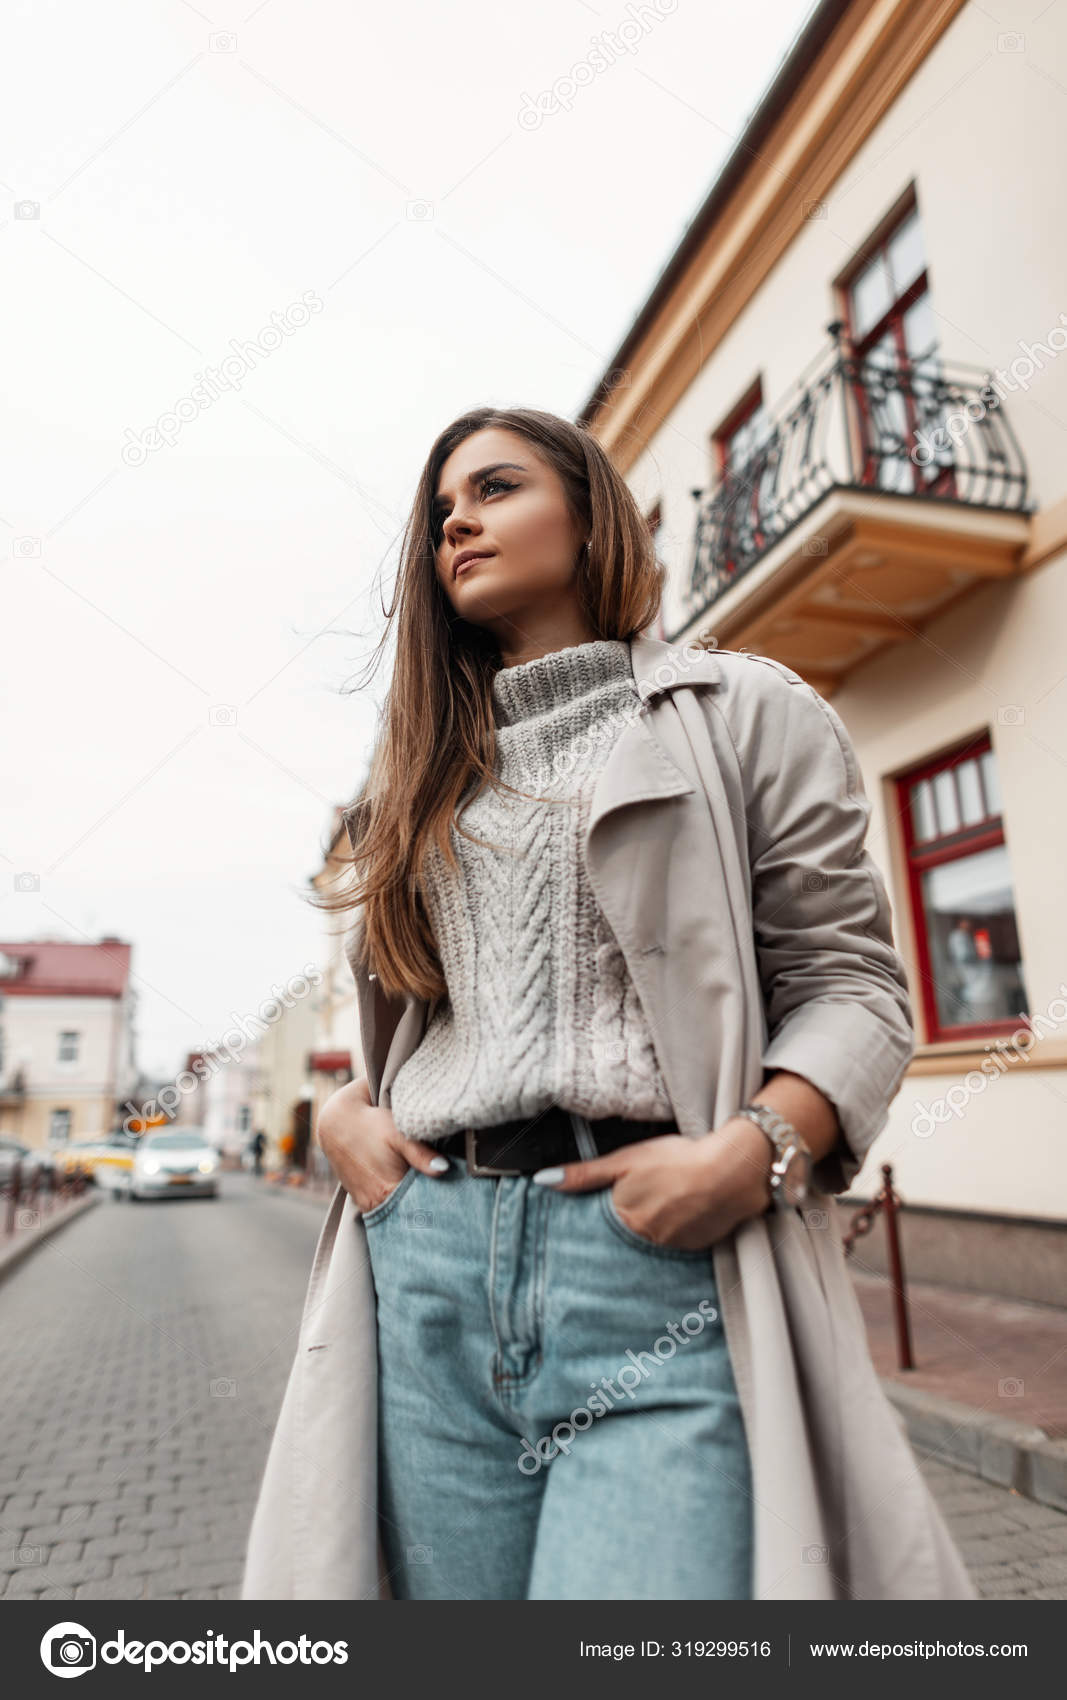 klip tørre salat Europæiske unge moderne kvinde i stilfuldt efterår-foråret tøj står på en  gade i byen nær vintage bygninger. Trendy pige model i moderigtigt overtøj  udendørs. Sæsonbestemt dametøj . — Stock-foto © alonesdj #319299516